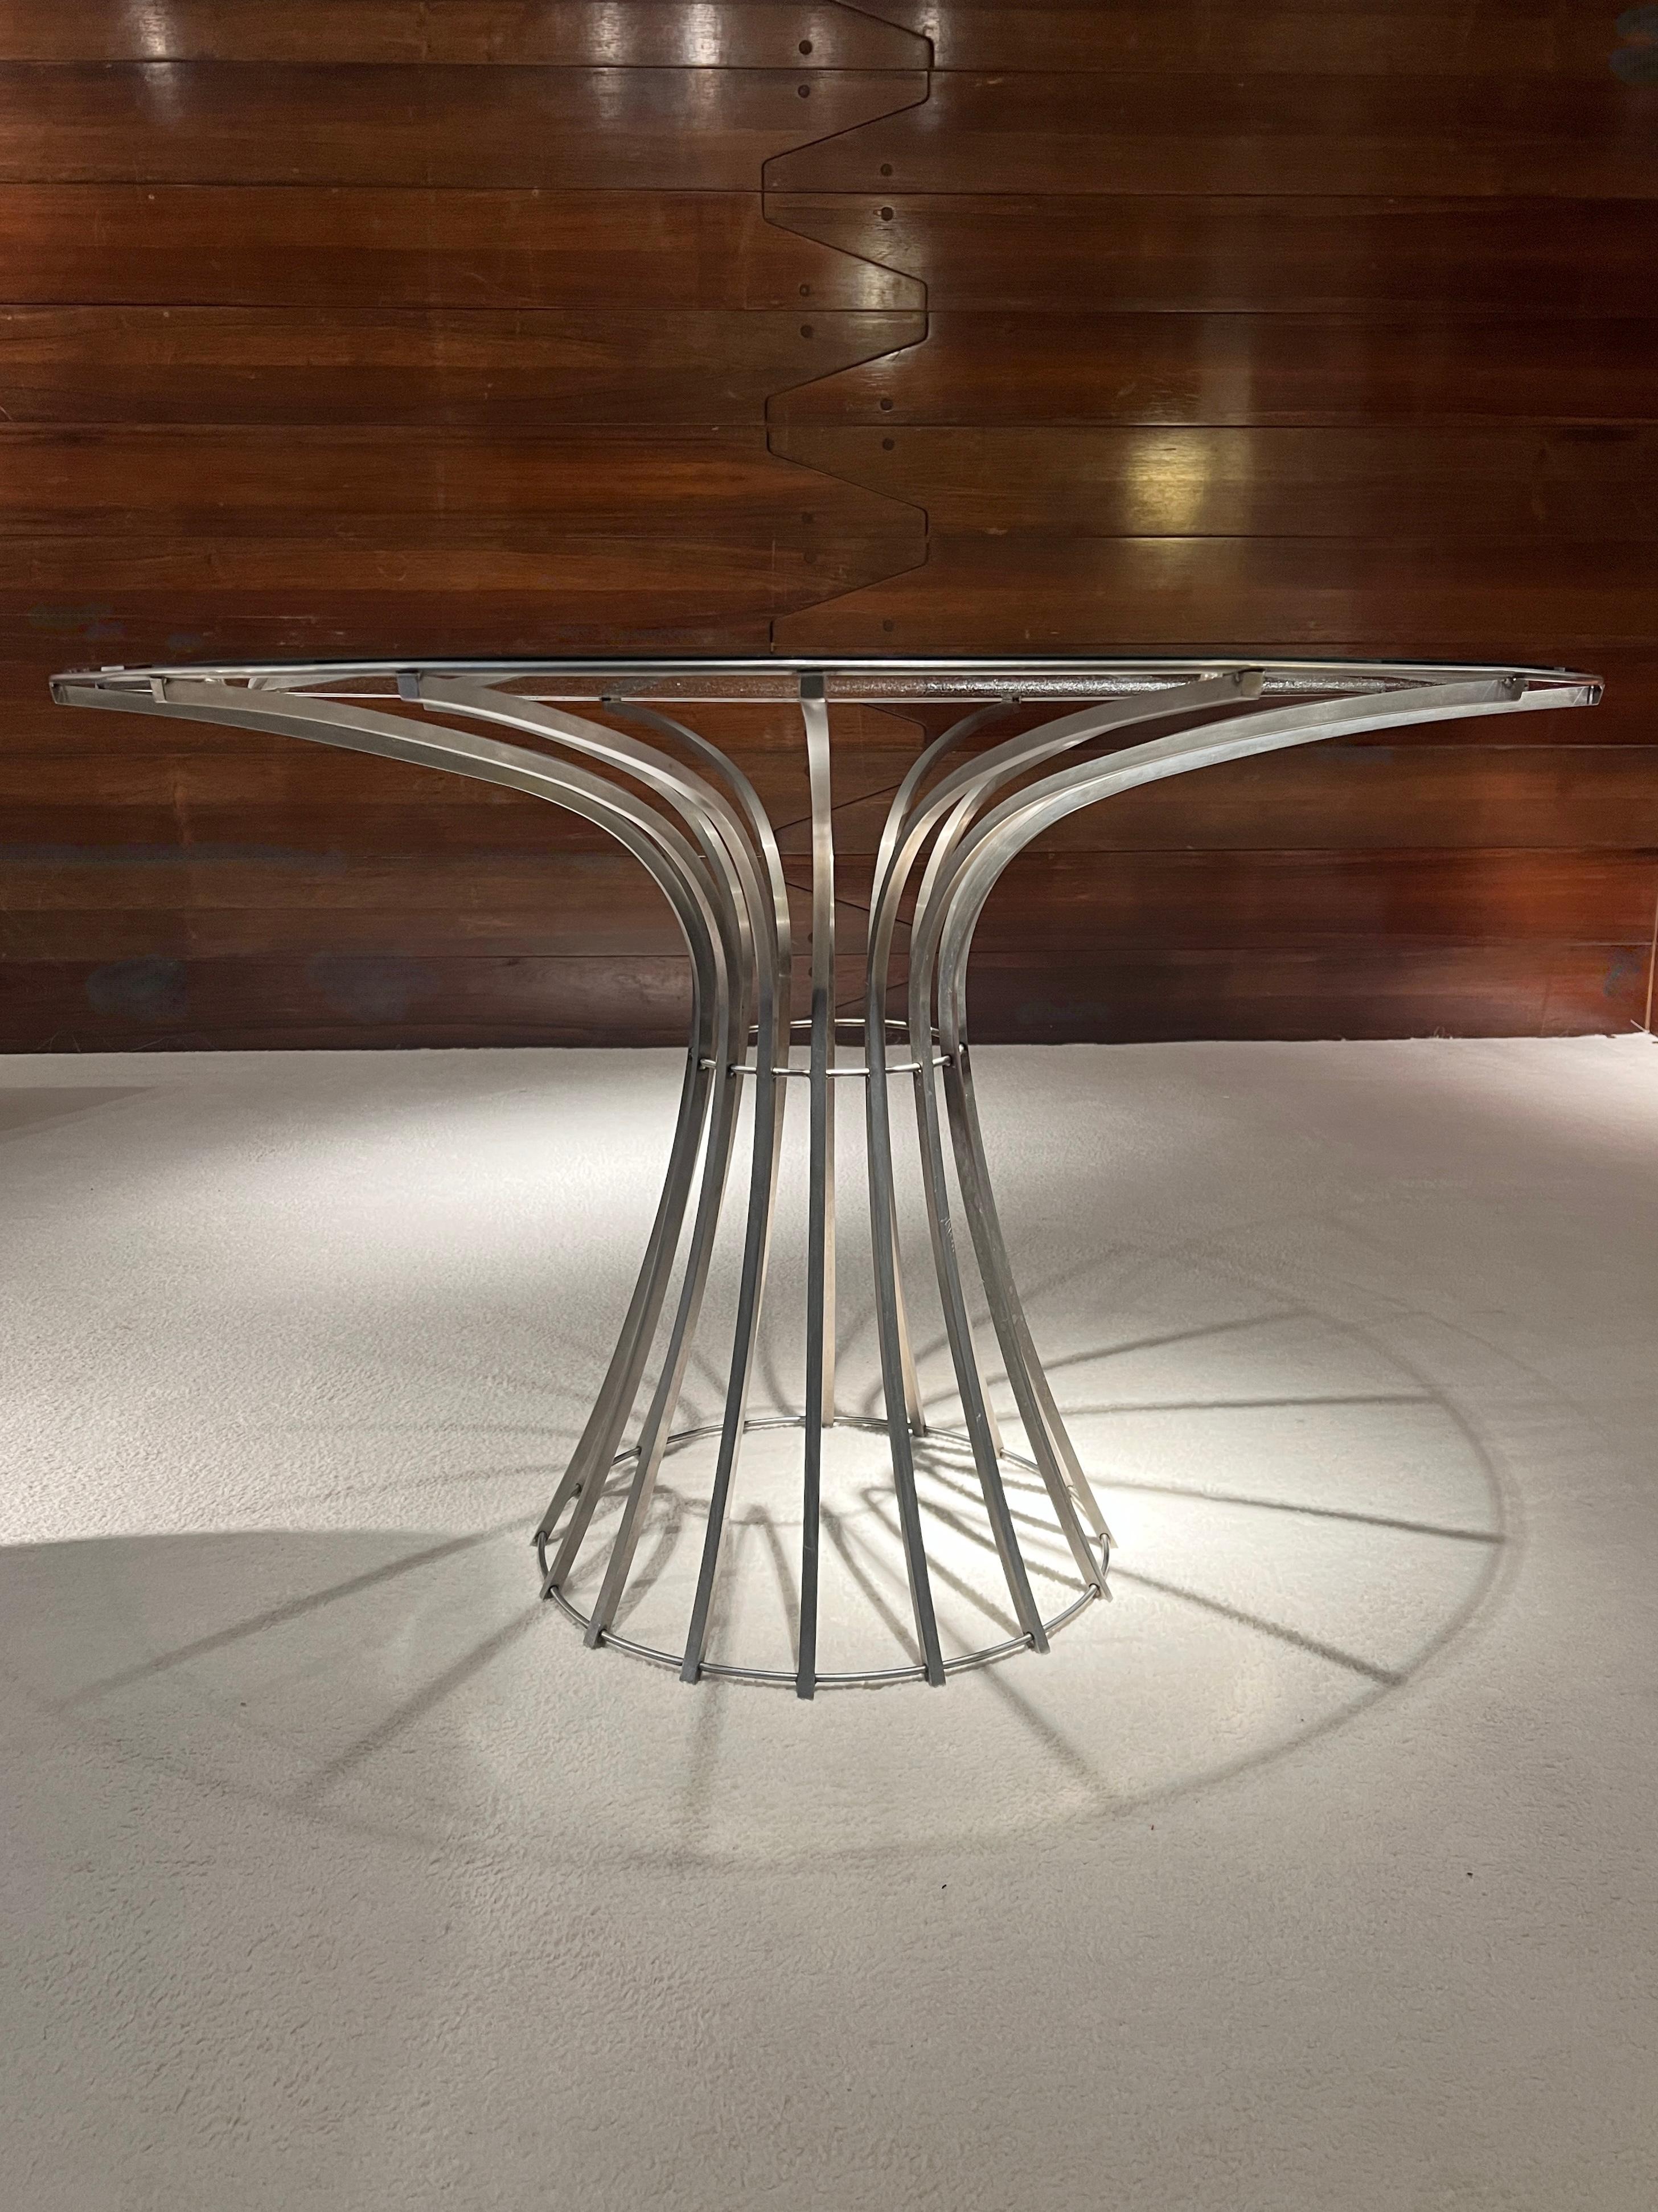 Außergewöhnlicher Tisch, entworfen von dem französischen Designer Xavier Fréal. 
Dieses luftige Design basiert auf einer ästhetischen Konstruktion mit architektonischem Geist. Die schlanken, geschwungenen Stahlbeine tragen die Glasplatte mit